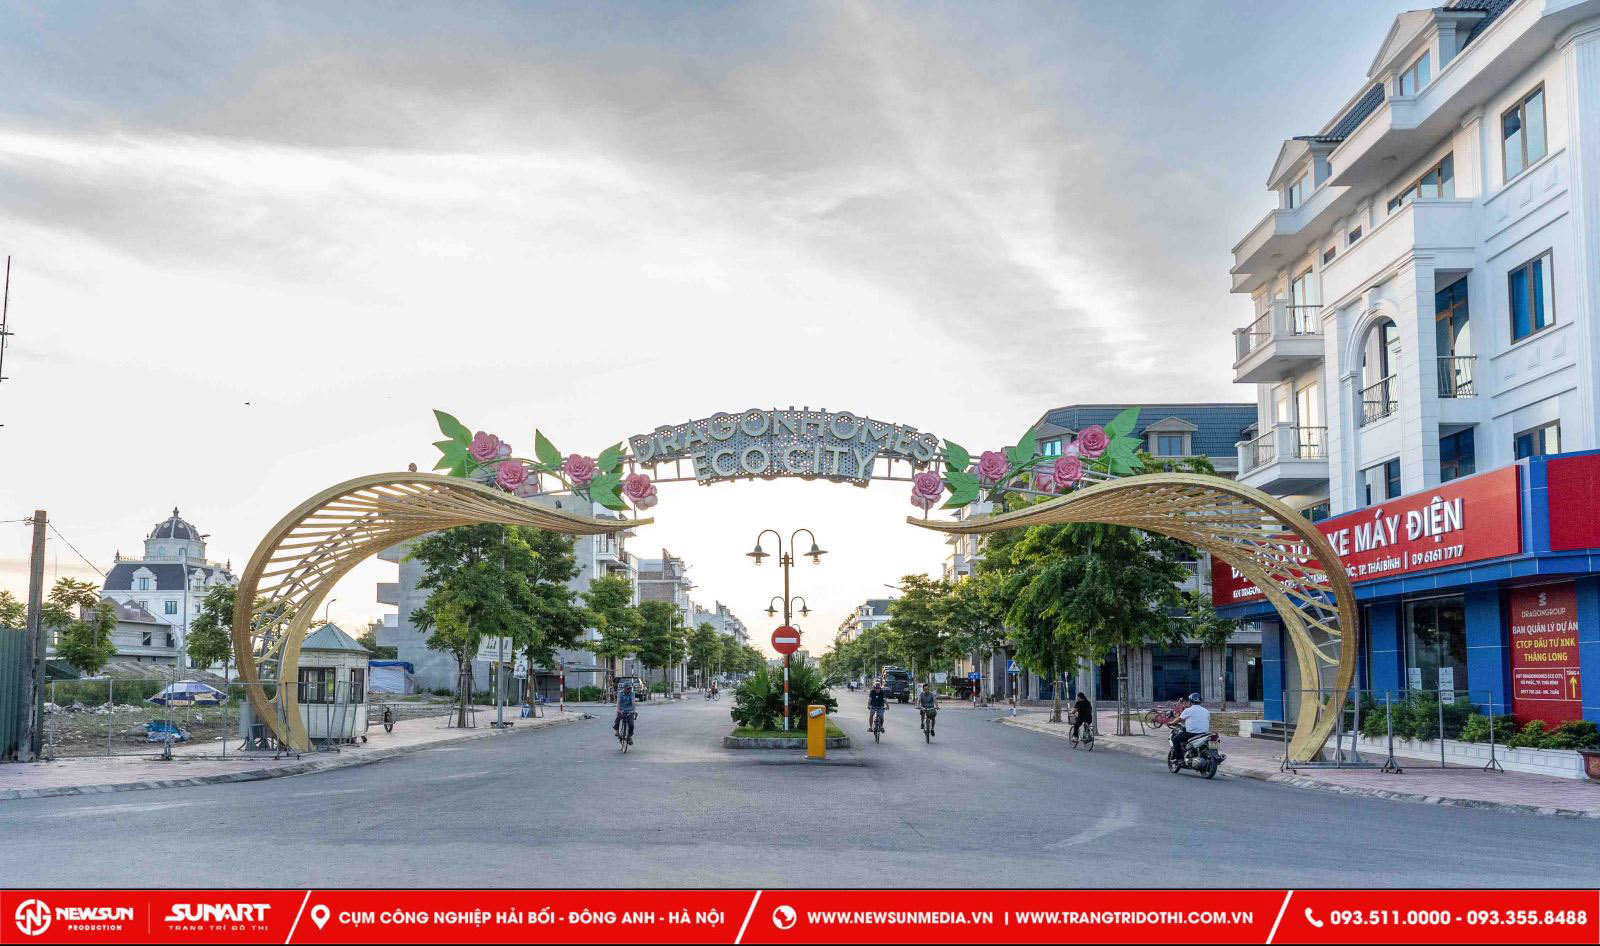 Thiết kế trang trí cổng chào thành phố Thái Bình kết hợp đèn Led